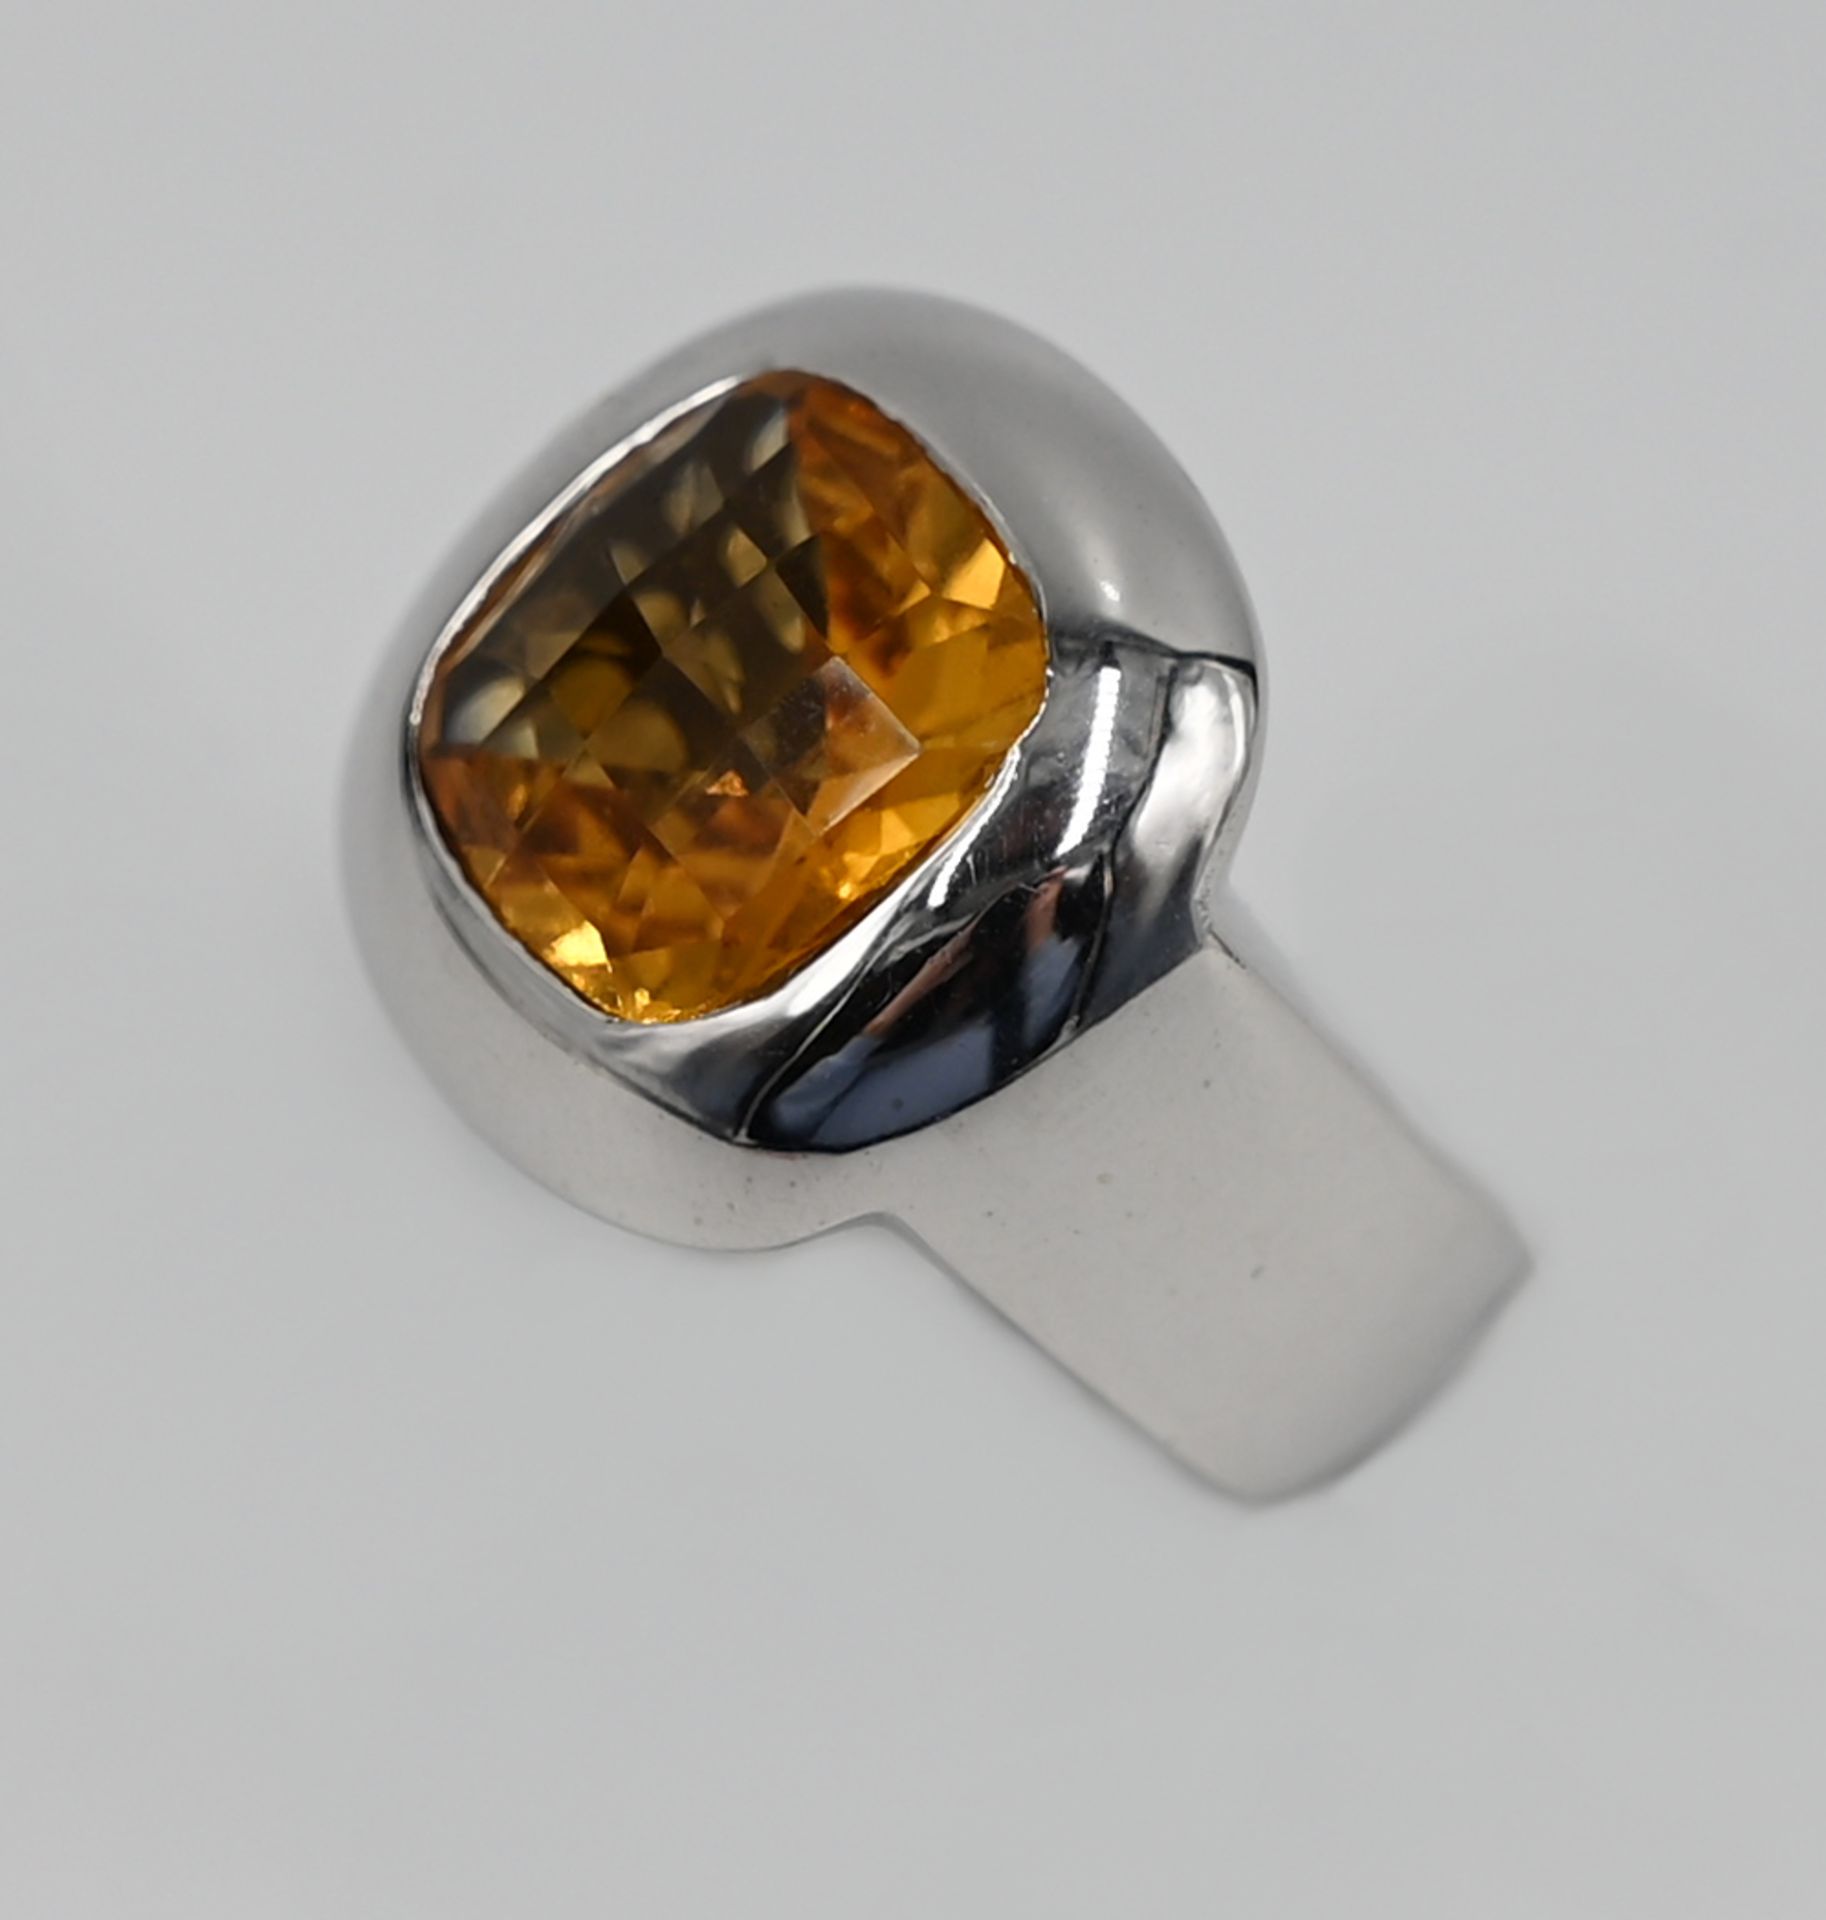 1 Damenring WG 18ct. lt. EL gek. Juwelier BUCHERER mit Citrin, ca. Ringgröße 49/50, Gesamtgewicht ca - Image 2 of 2